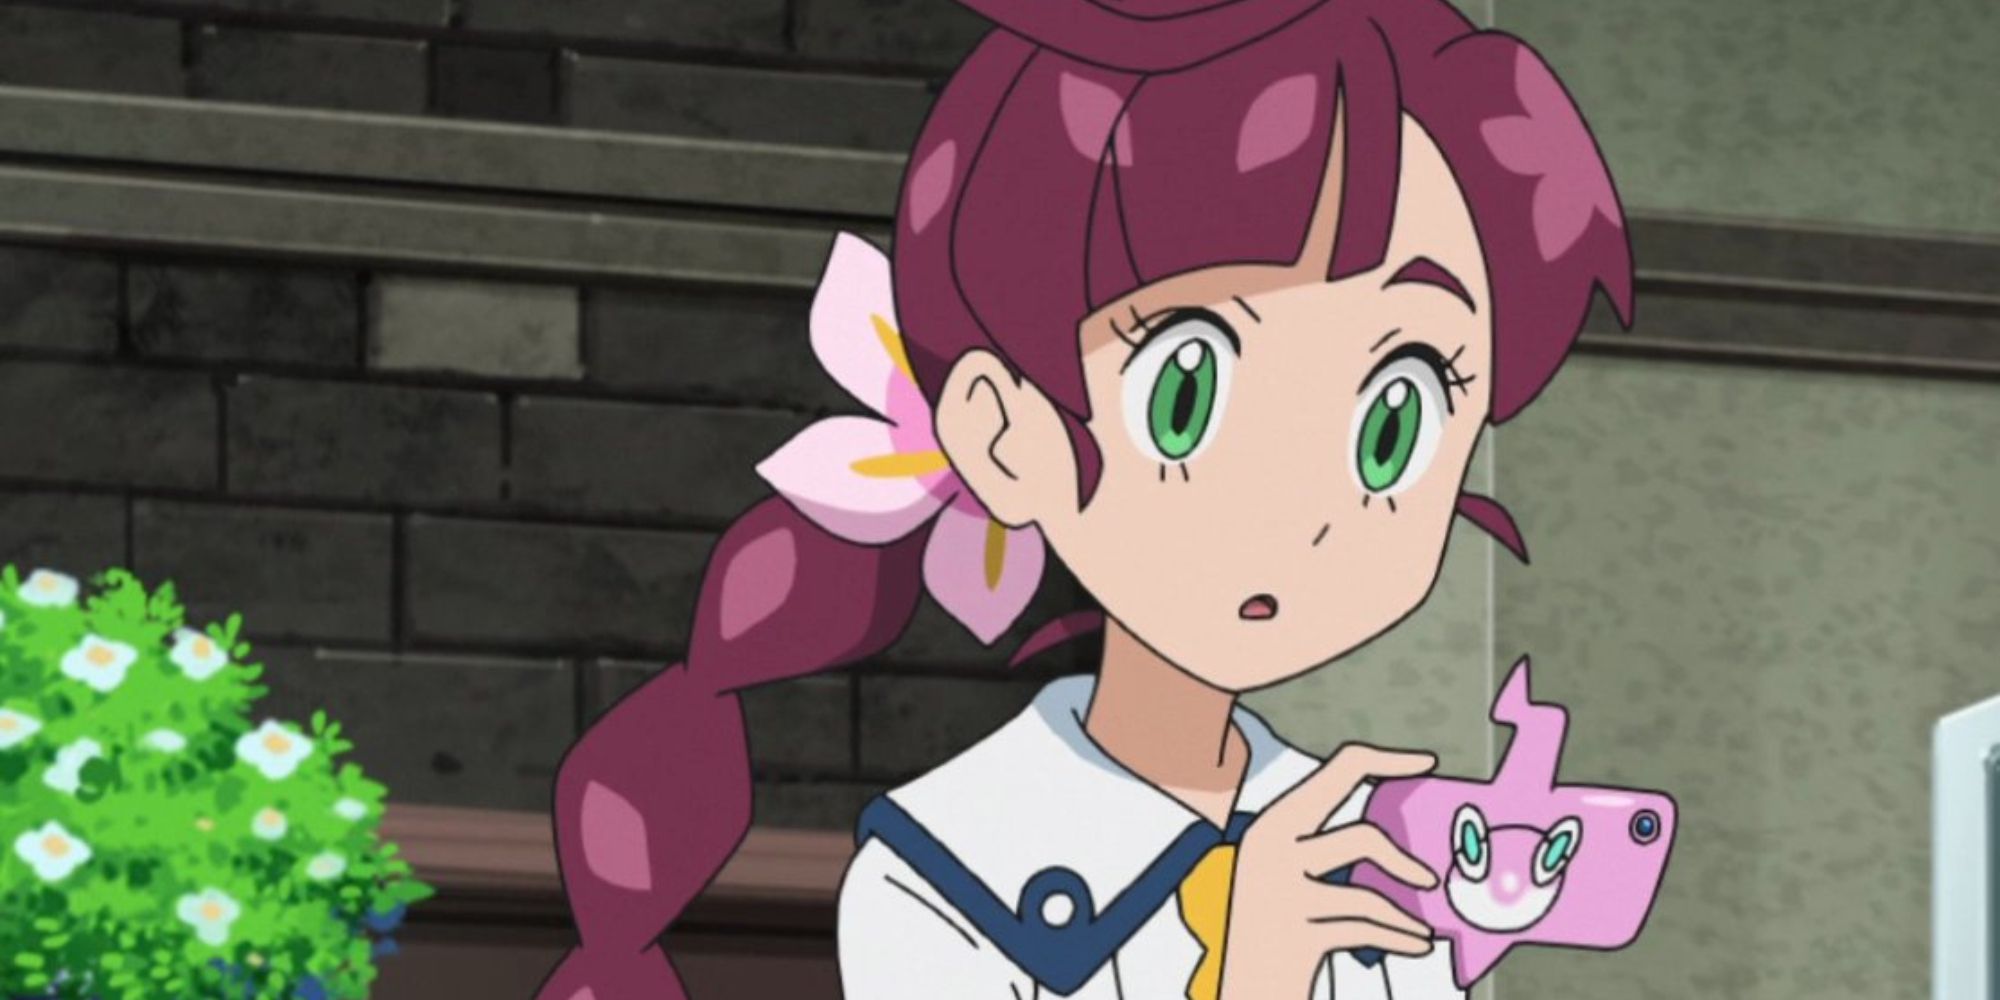 Chloe Pokedex in the Pokemon Anime